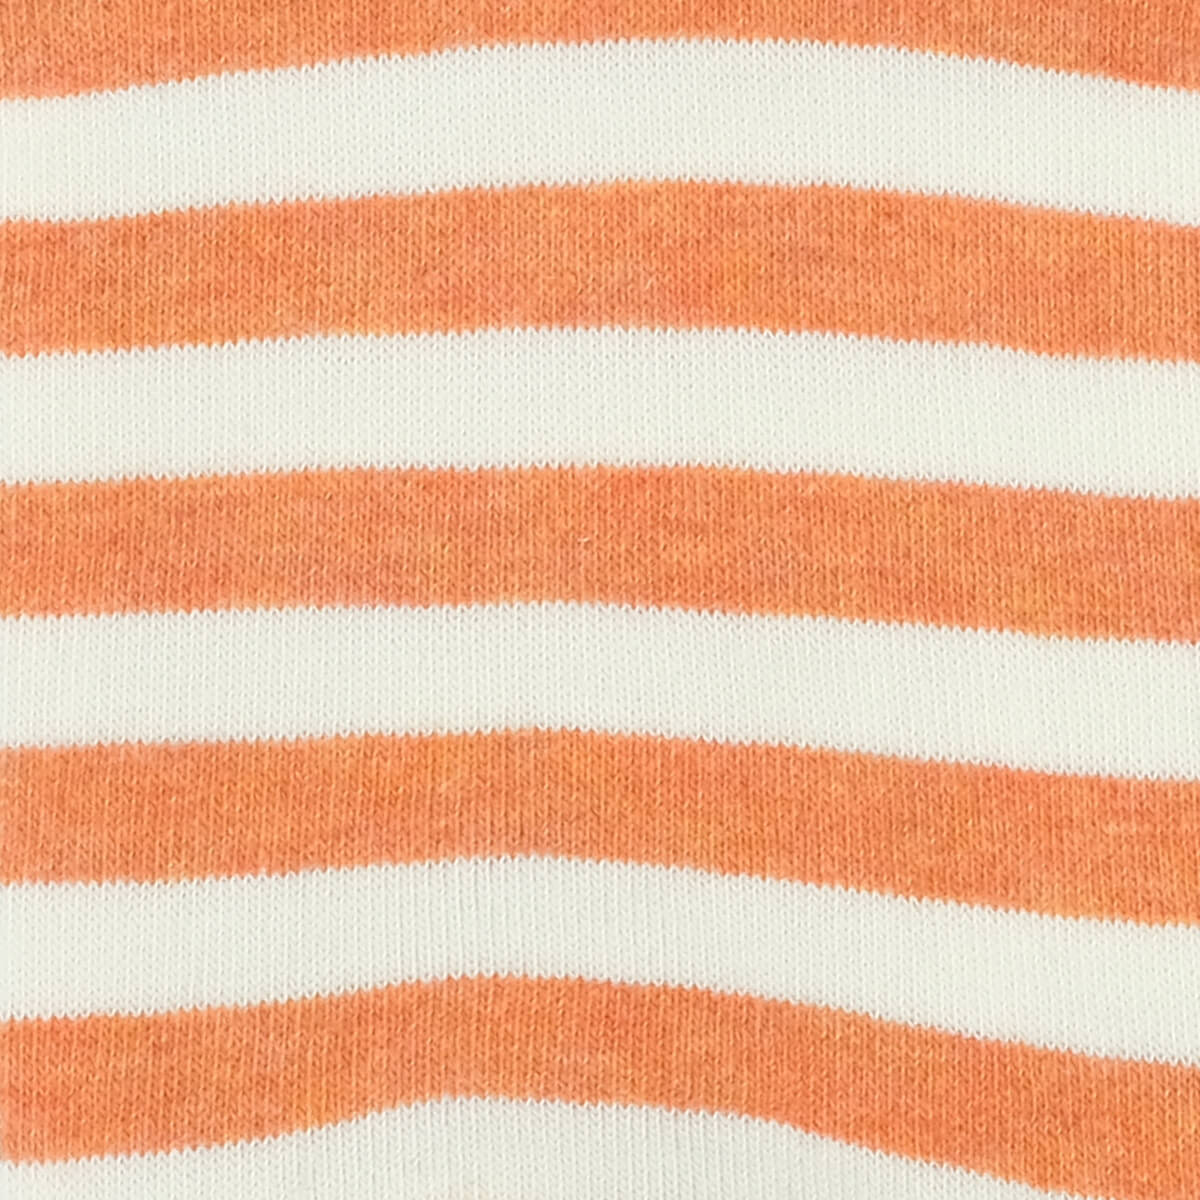 Womens Socks - Abbey Stripes Women's Socks - Orange/Green⎪Etiquette Clothiers